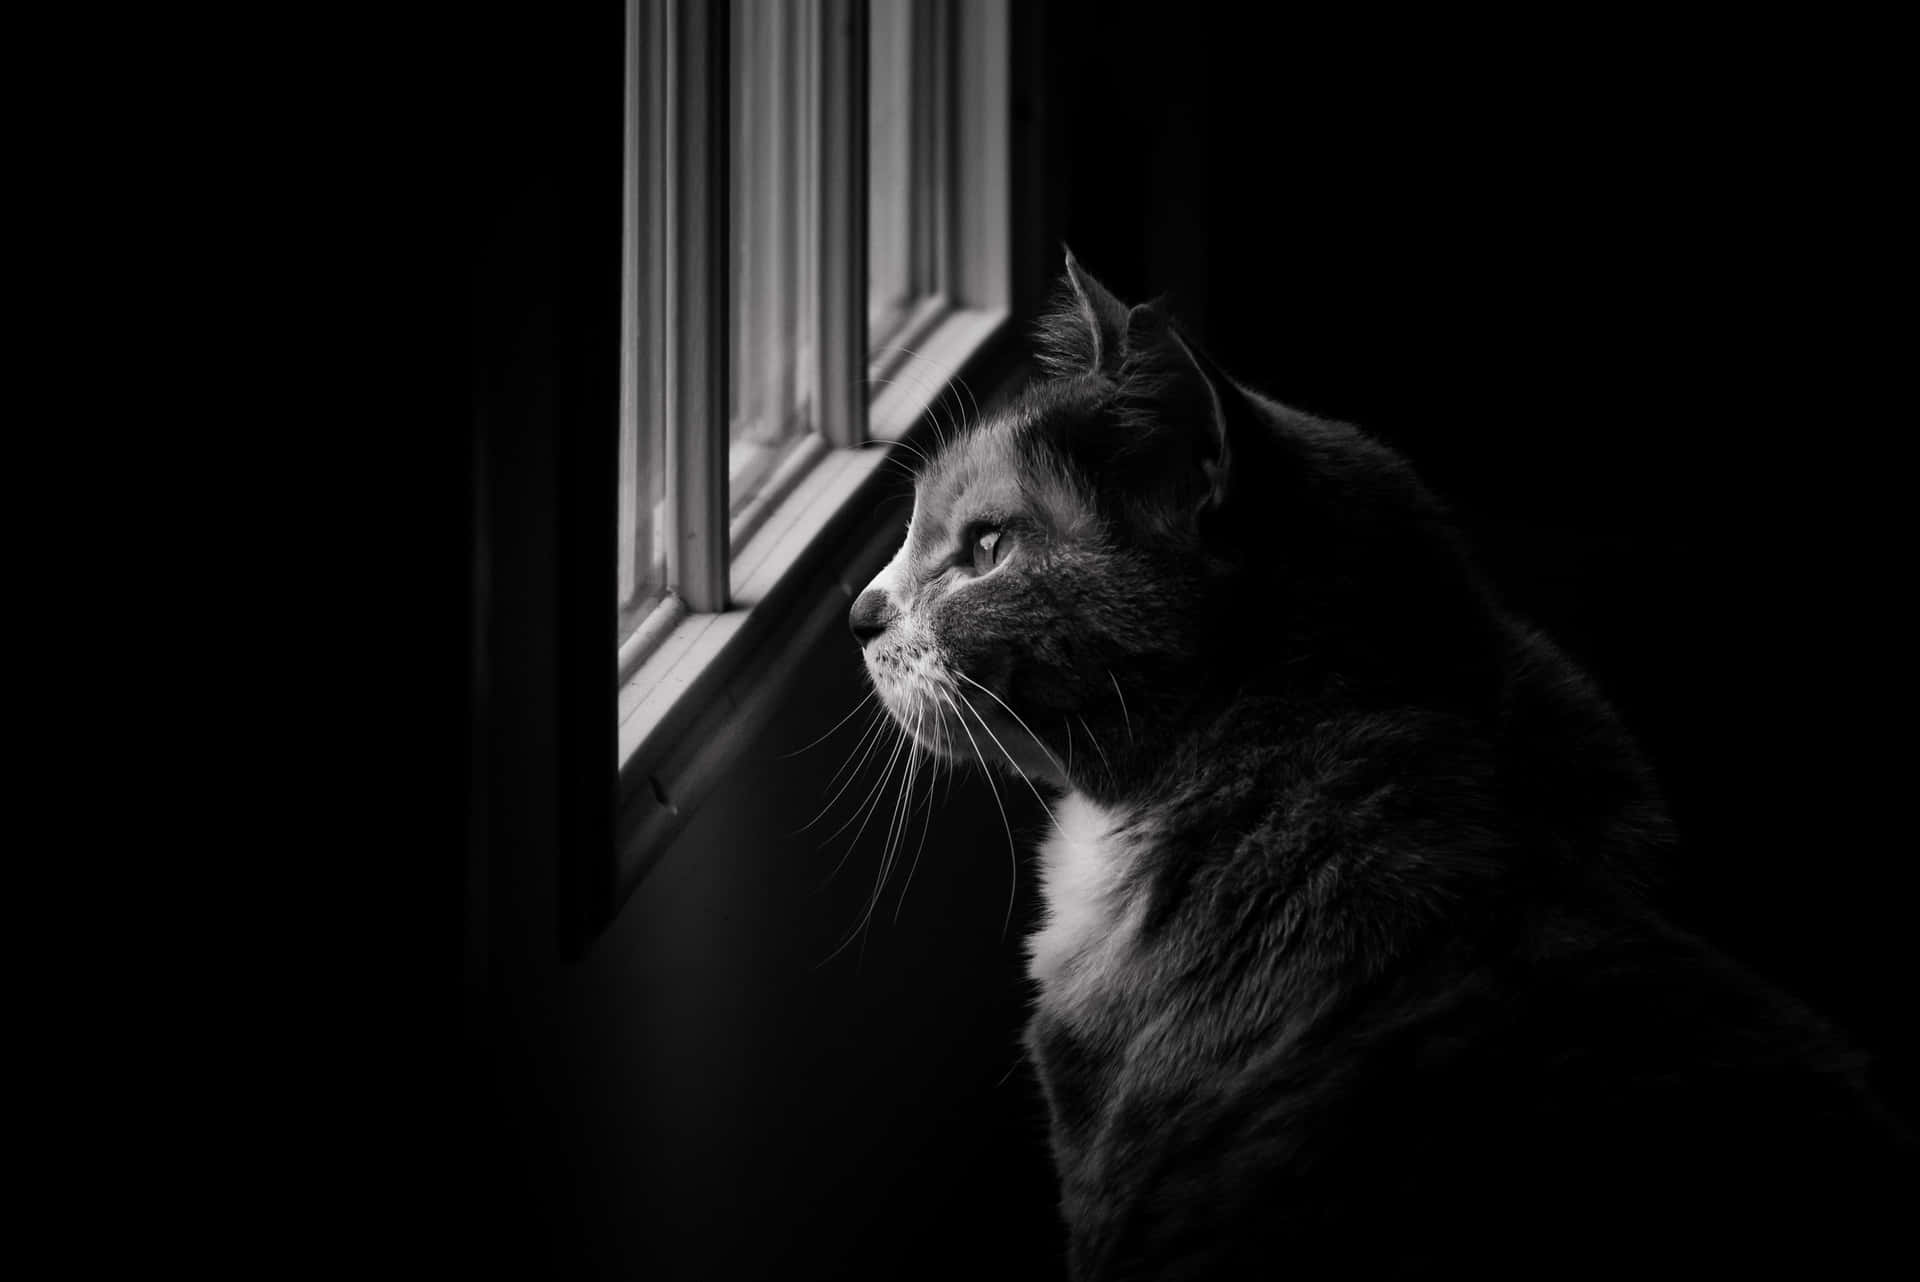 Monochrome Cat Looks Outside Window Background